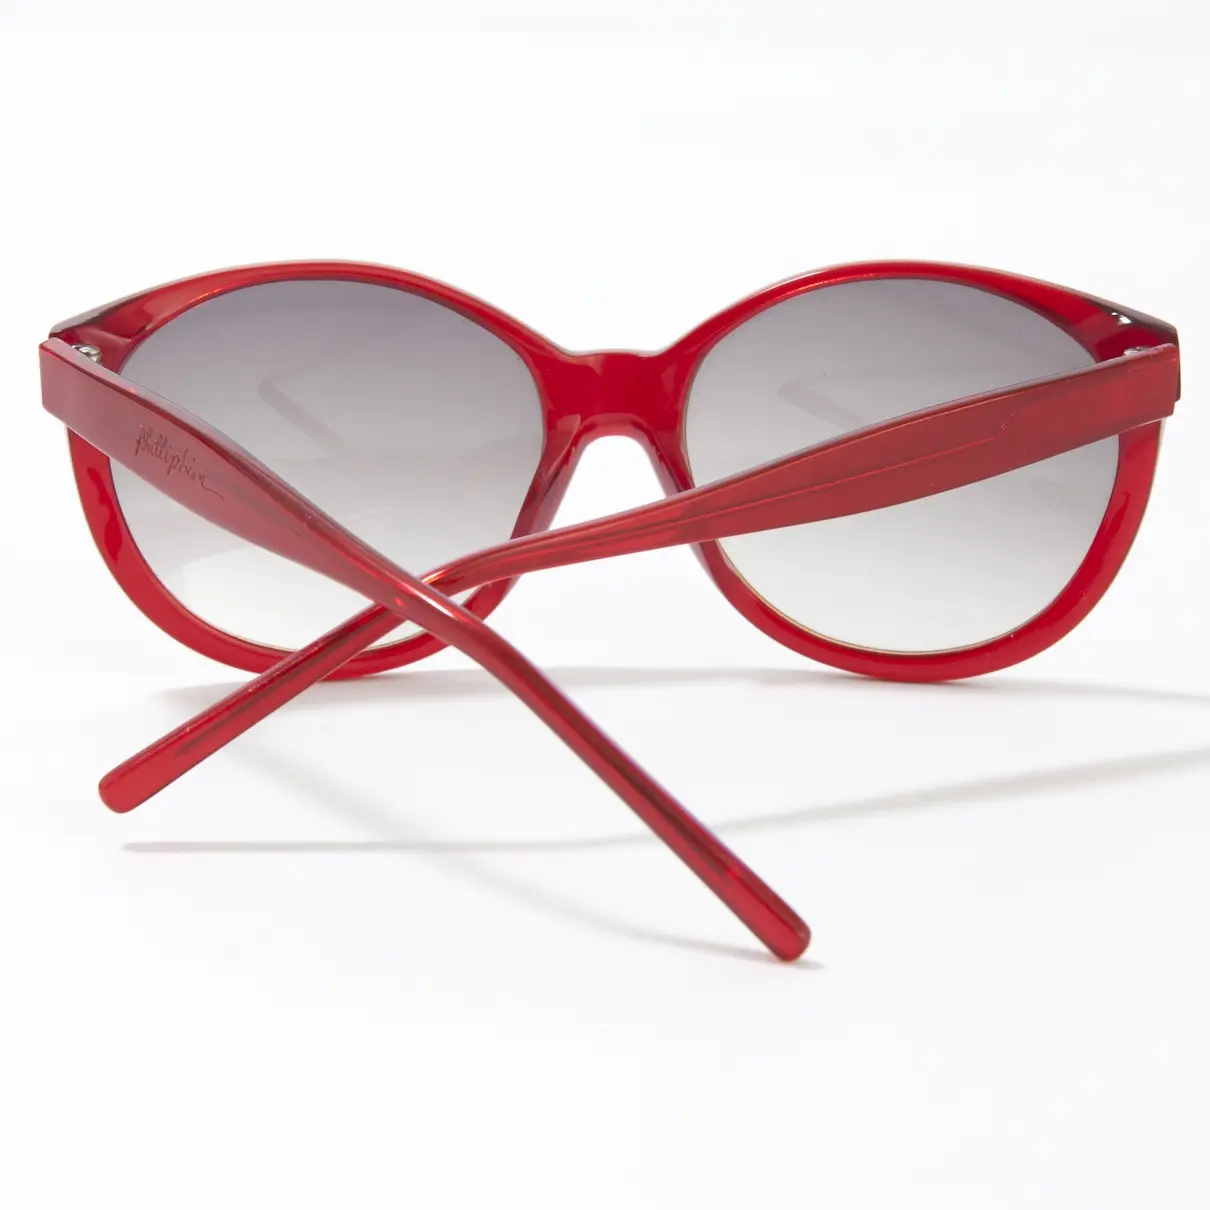 Buy 3.1 Phillip Lim Sunglasses online